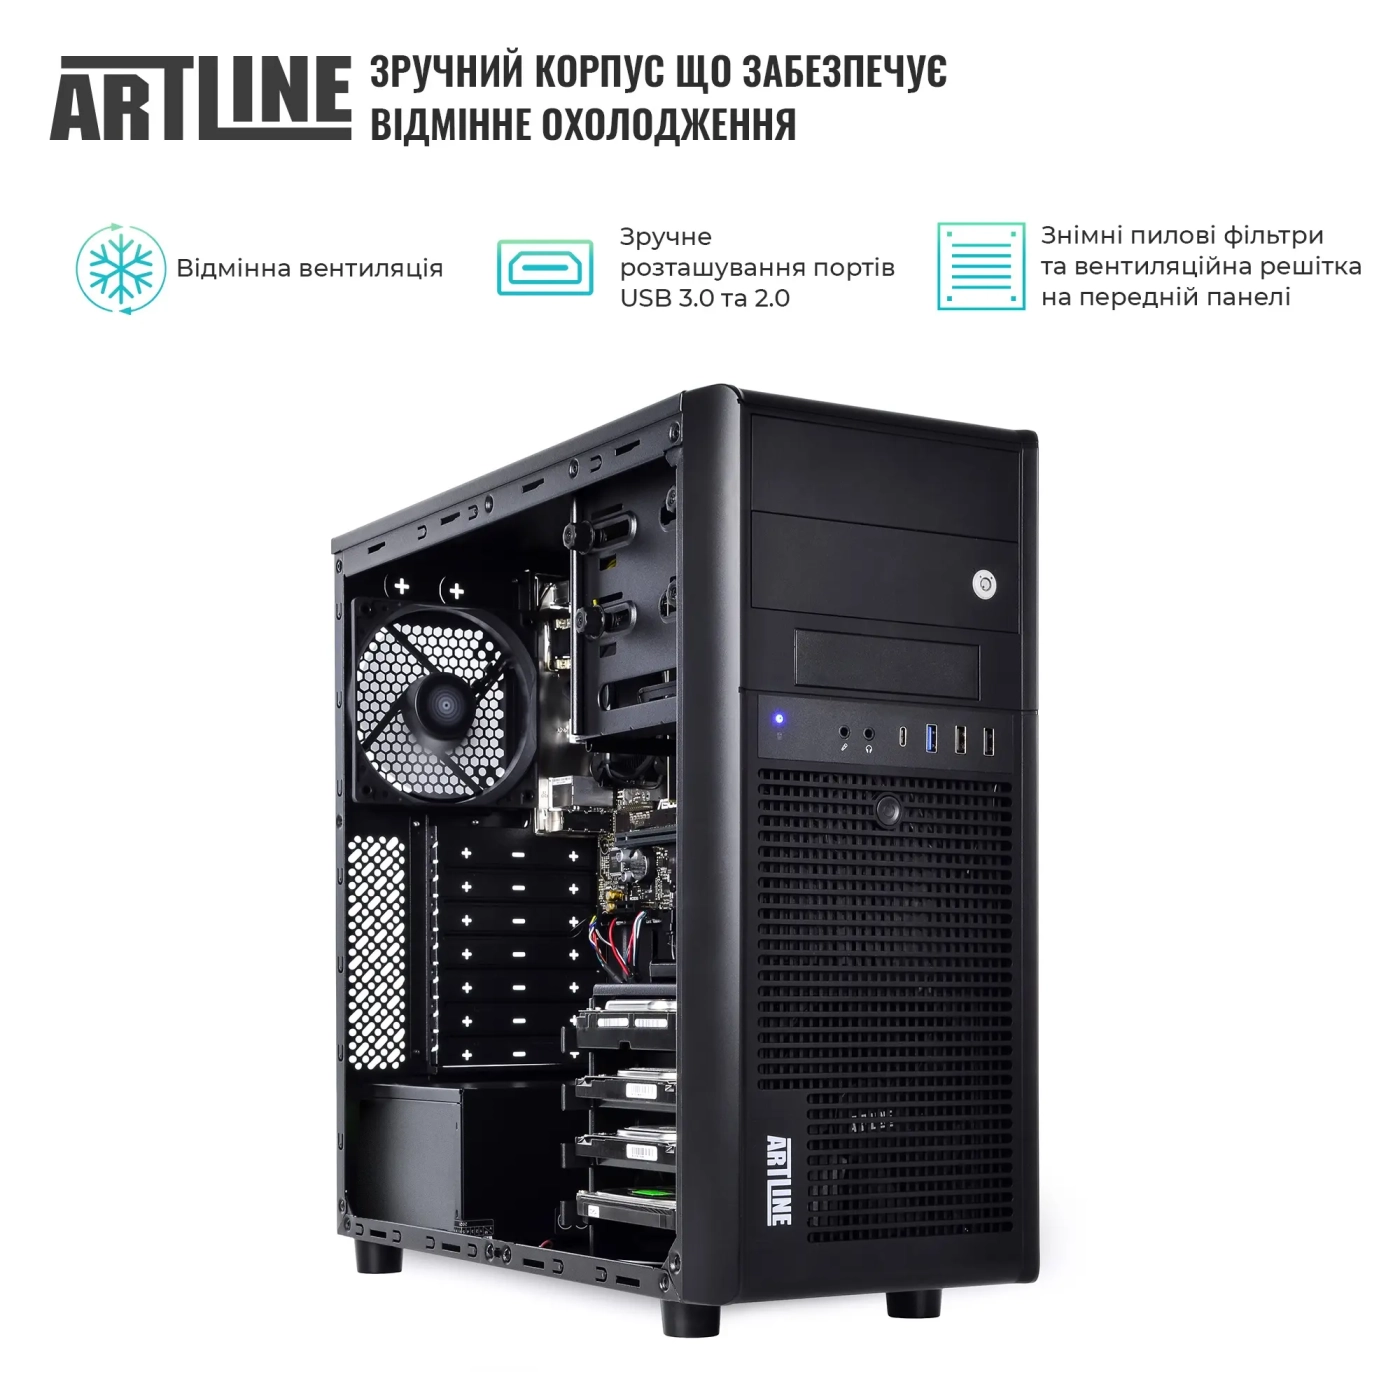 Купить Сервер ARTLINE Business T34 (T34v22) - фото 3